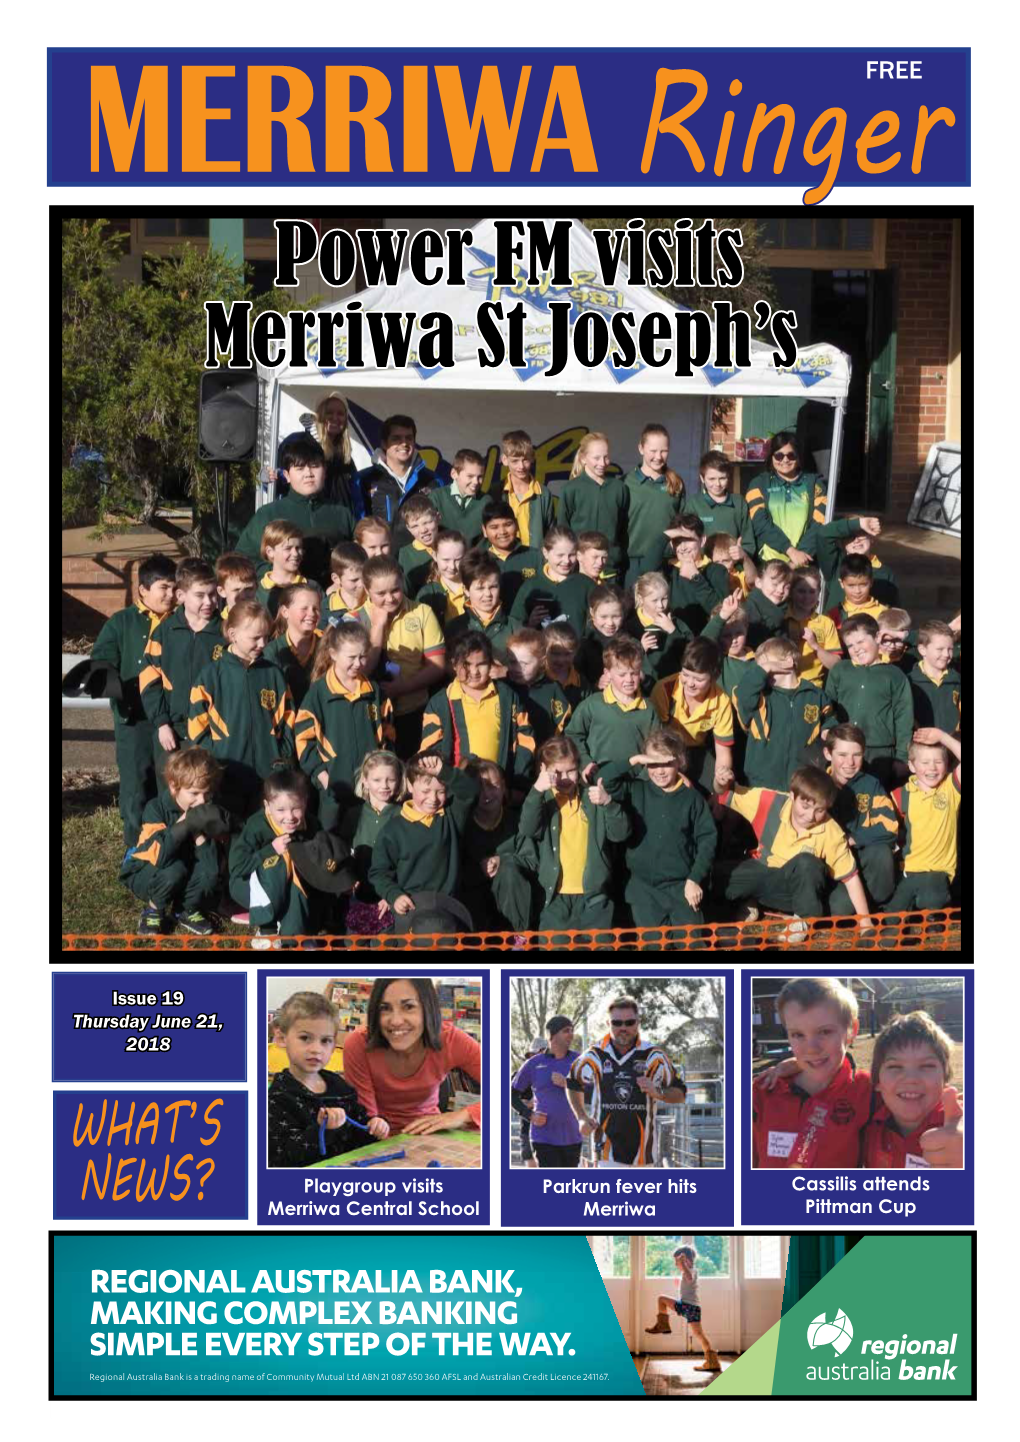 Power FM Visits Merriwa St Joseph's